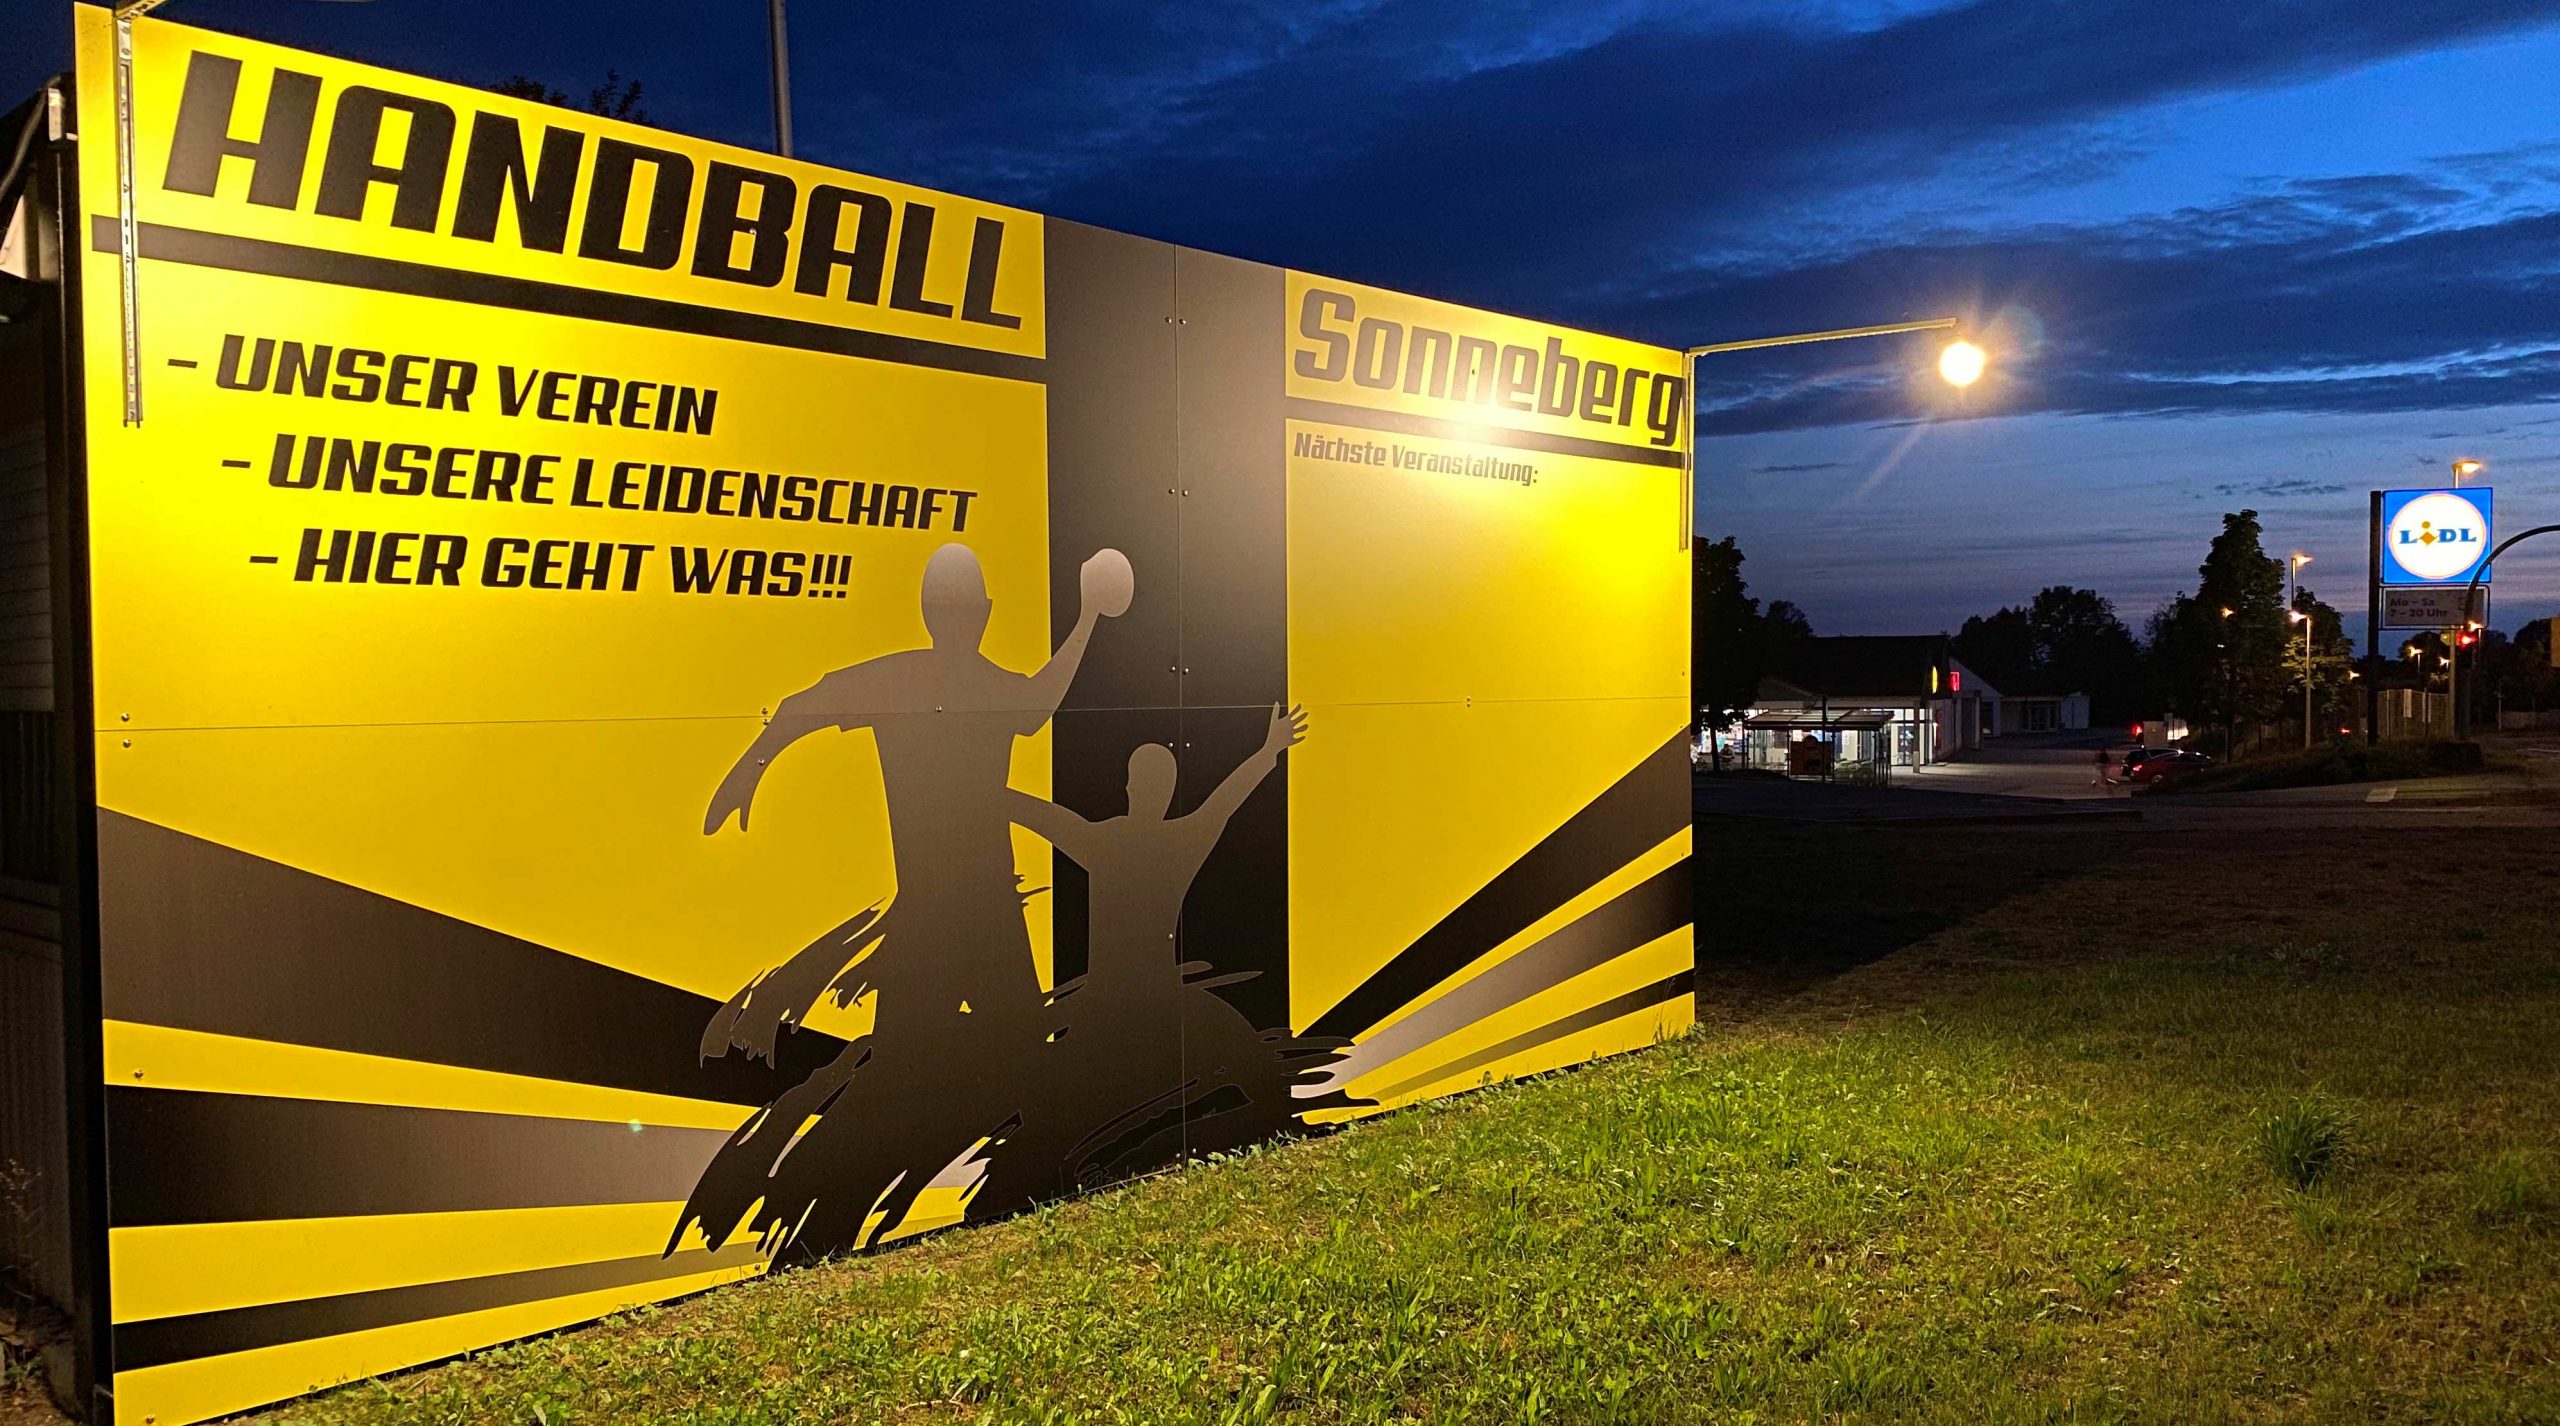 Handballverein-Sonneberg_ITSON GmbH - Ihre externe IT-Abteilung